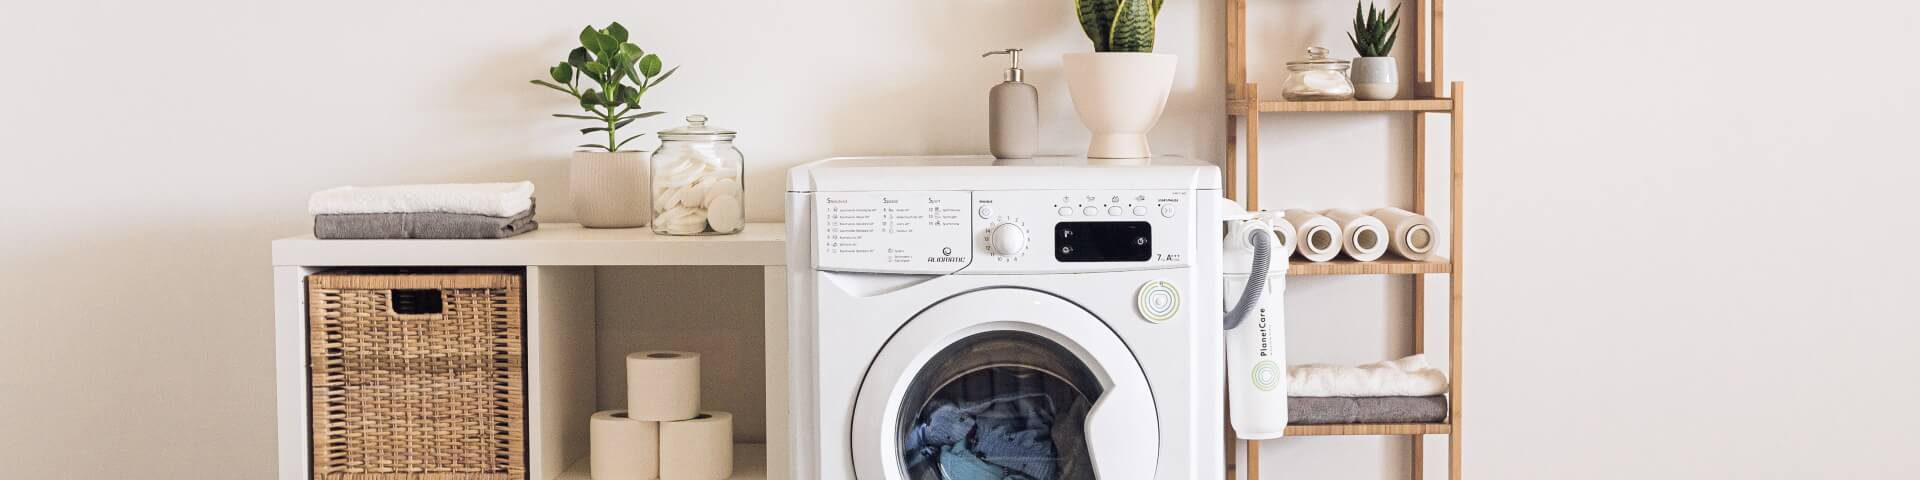 Jak uniknąć zafarbowania ubrań podczas prania?